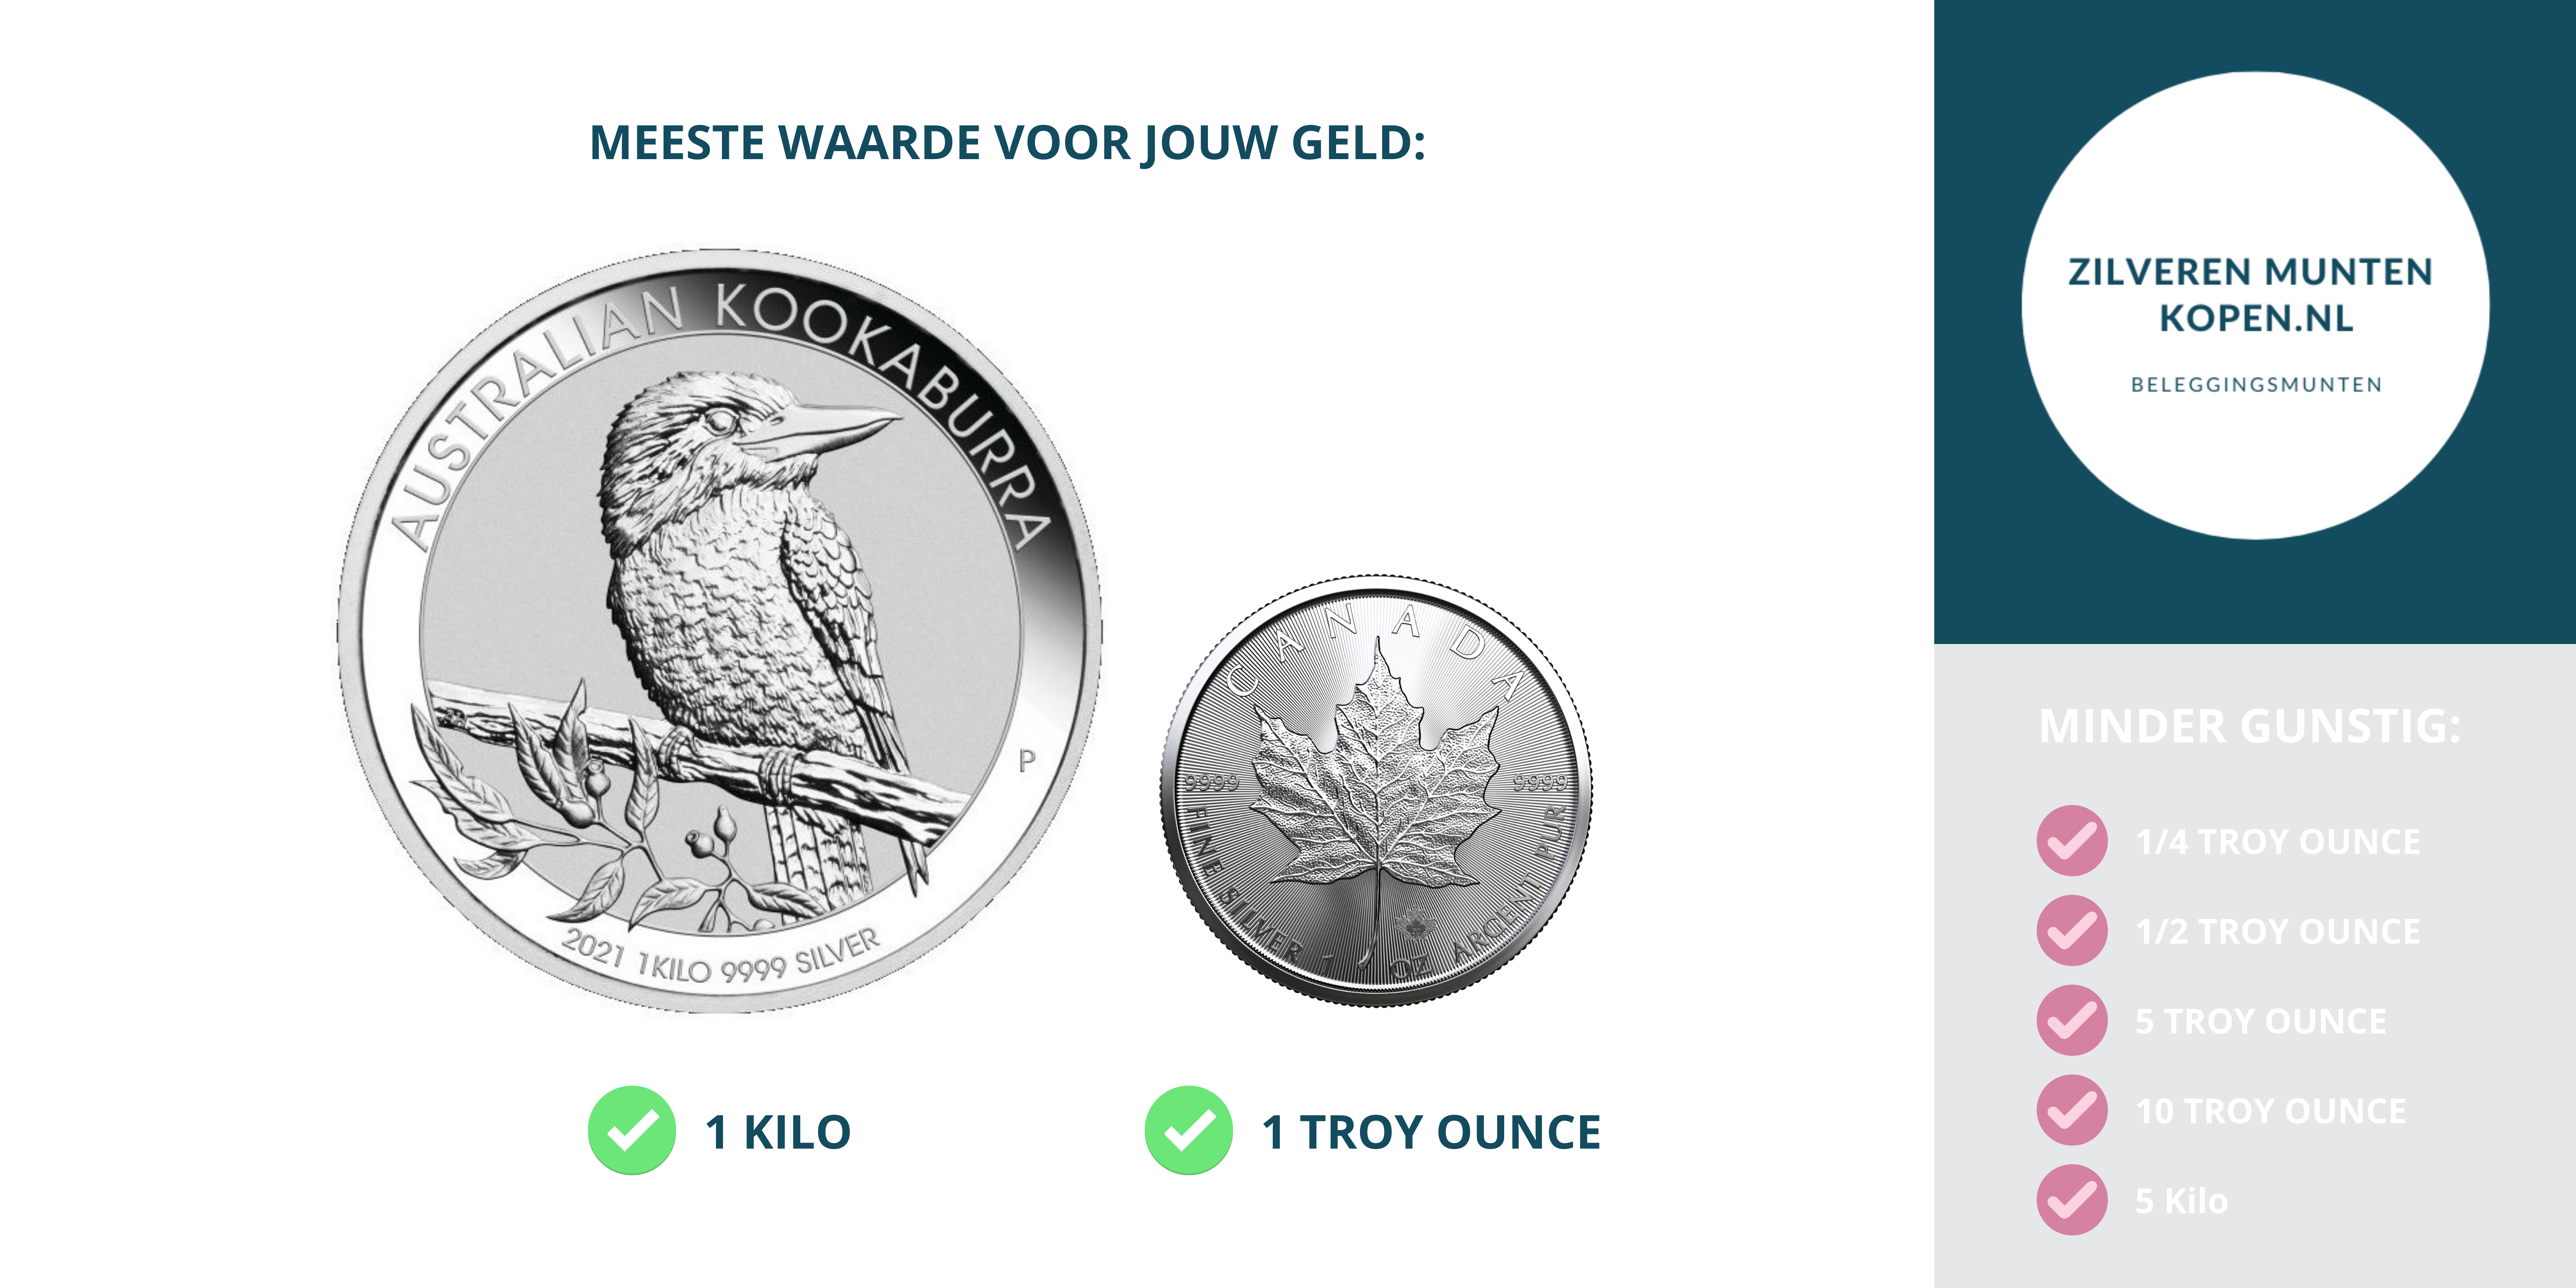 stroomkring doen alsof Ijsbeer Zilveren munten kopen - Puur zilveren munten Zilverenmuntenkopen.nl